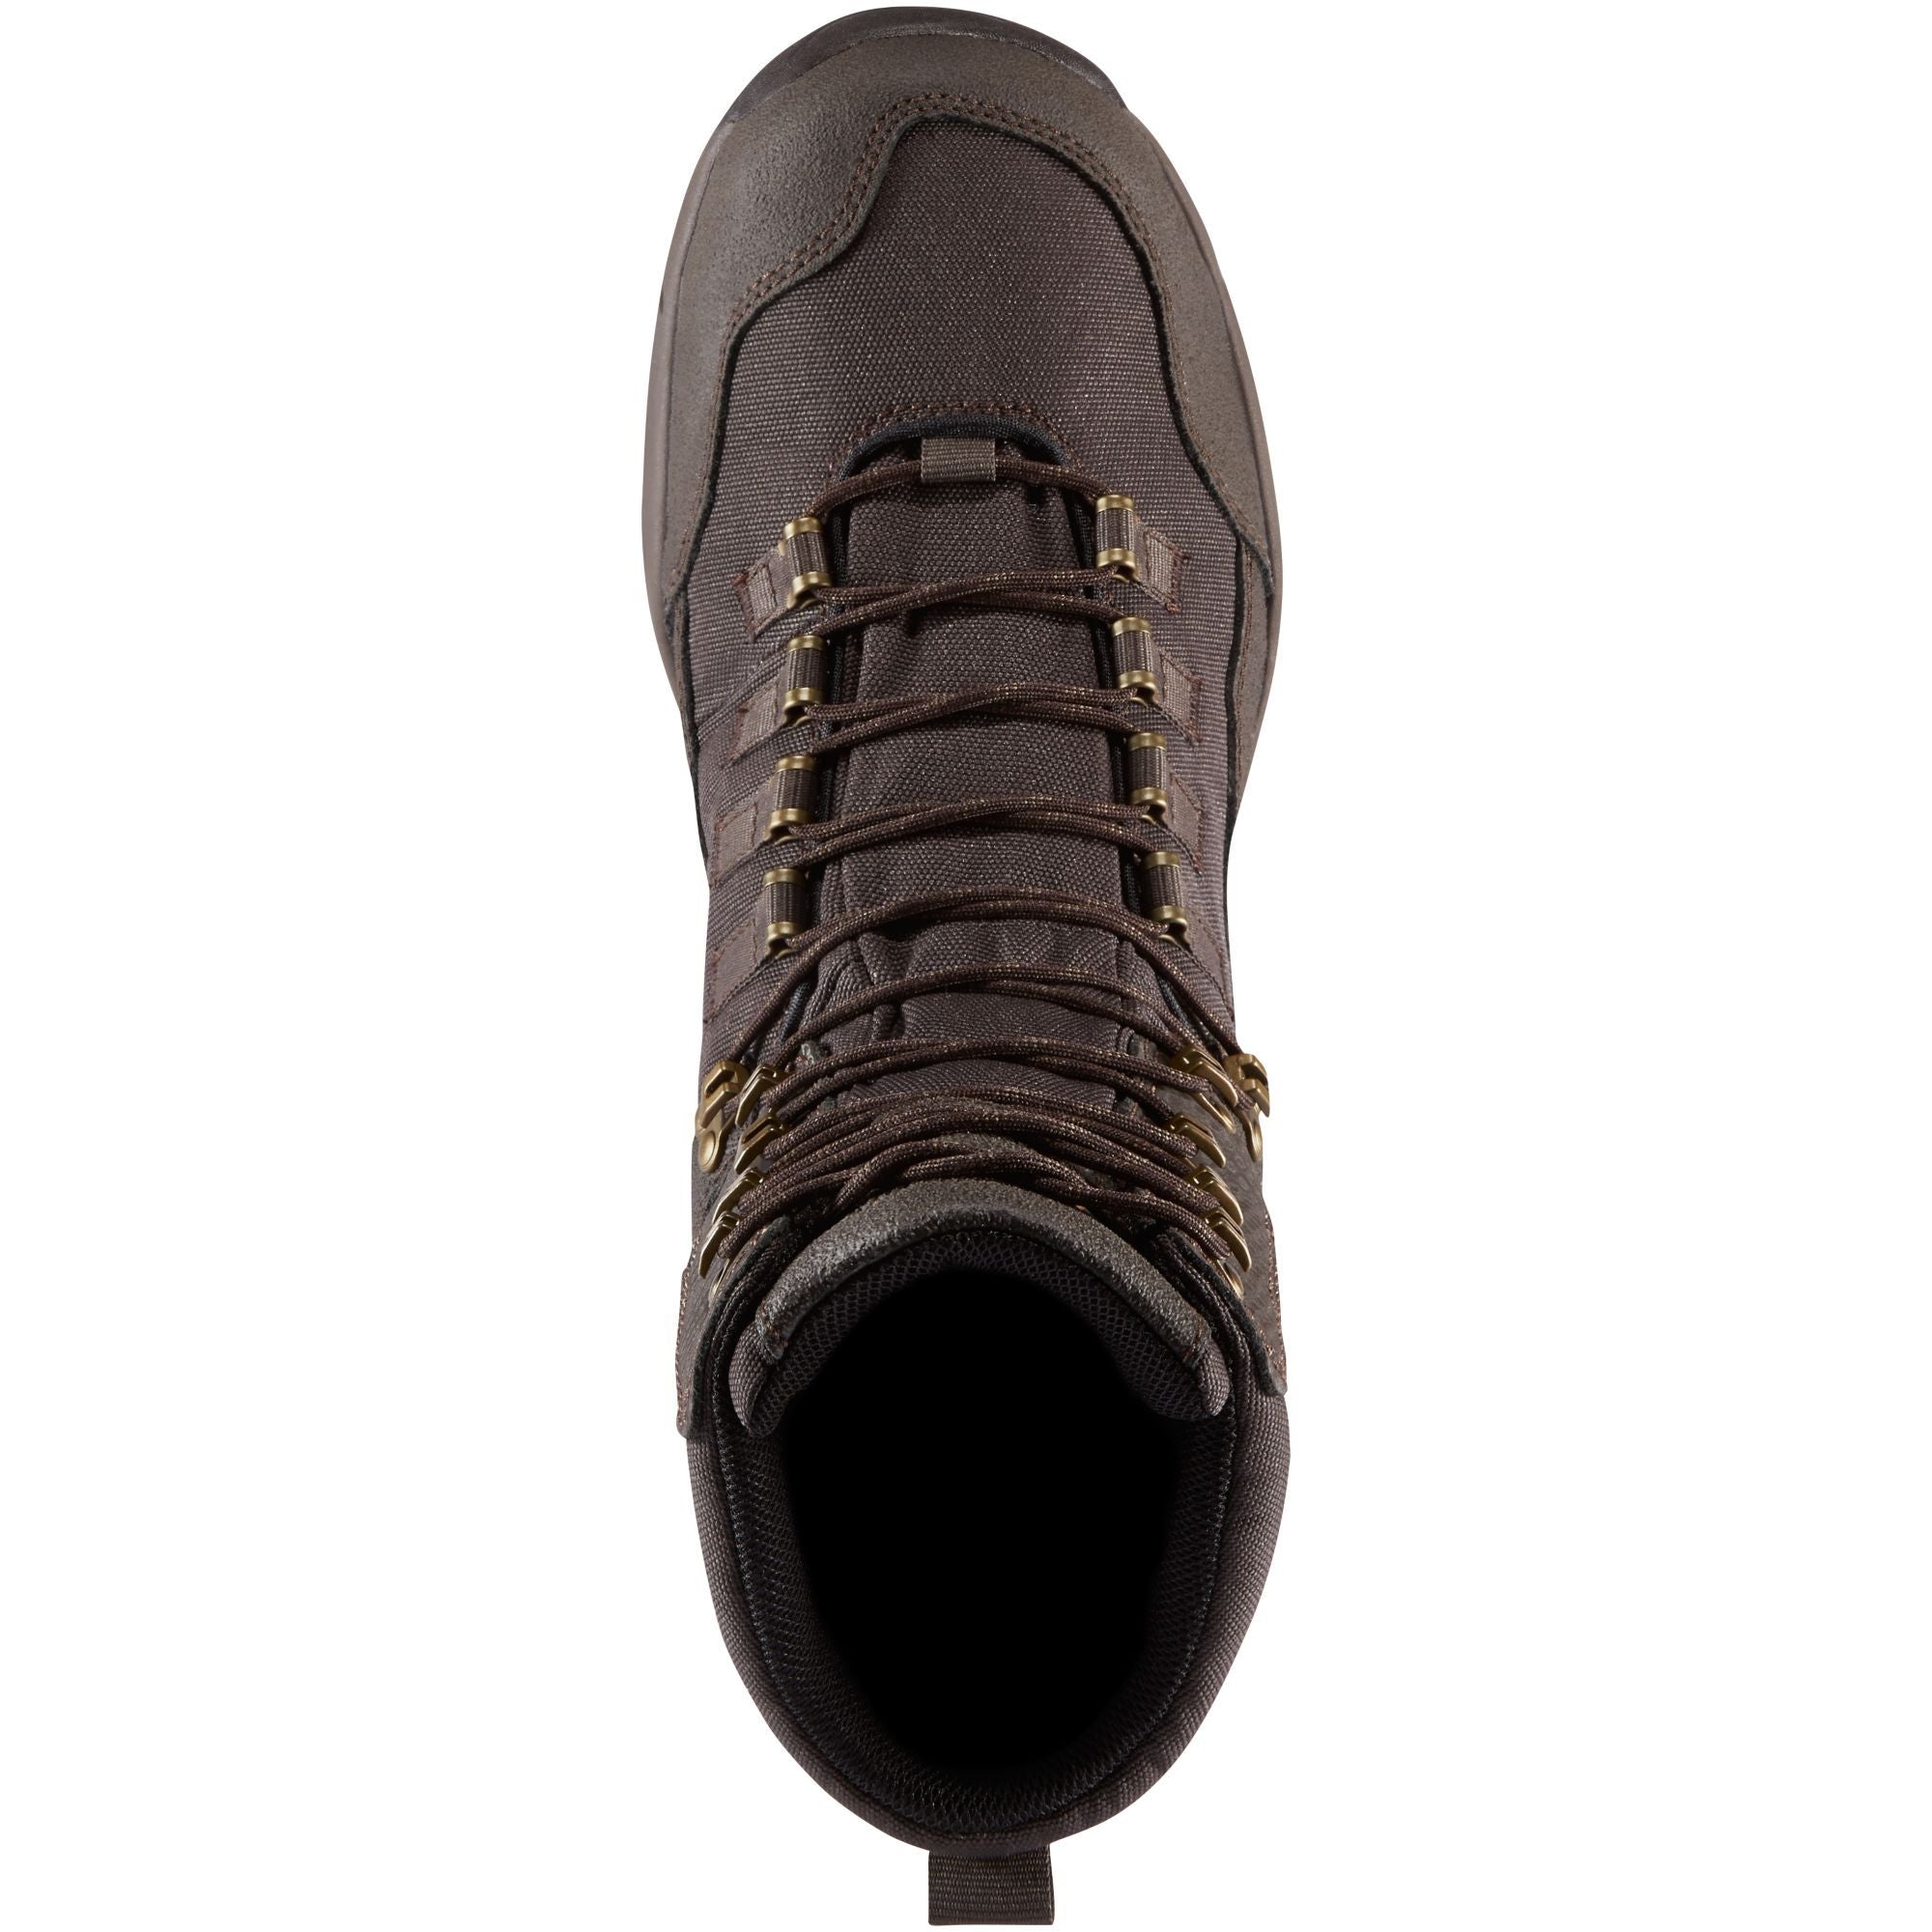 Danner Men's Vital 8" Waterproof Hunt Boot - Brown - 41550  - Overlook Boots